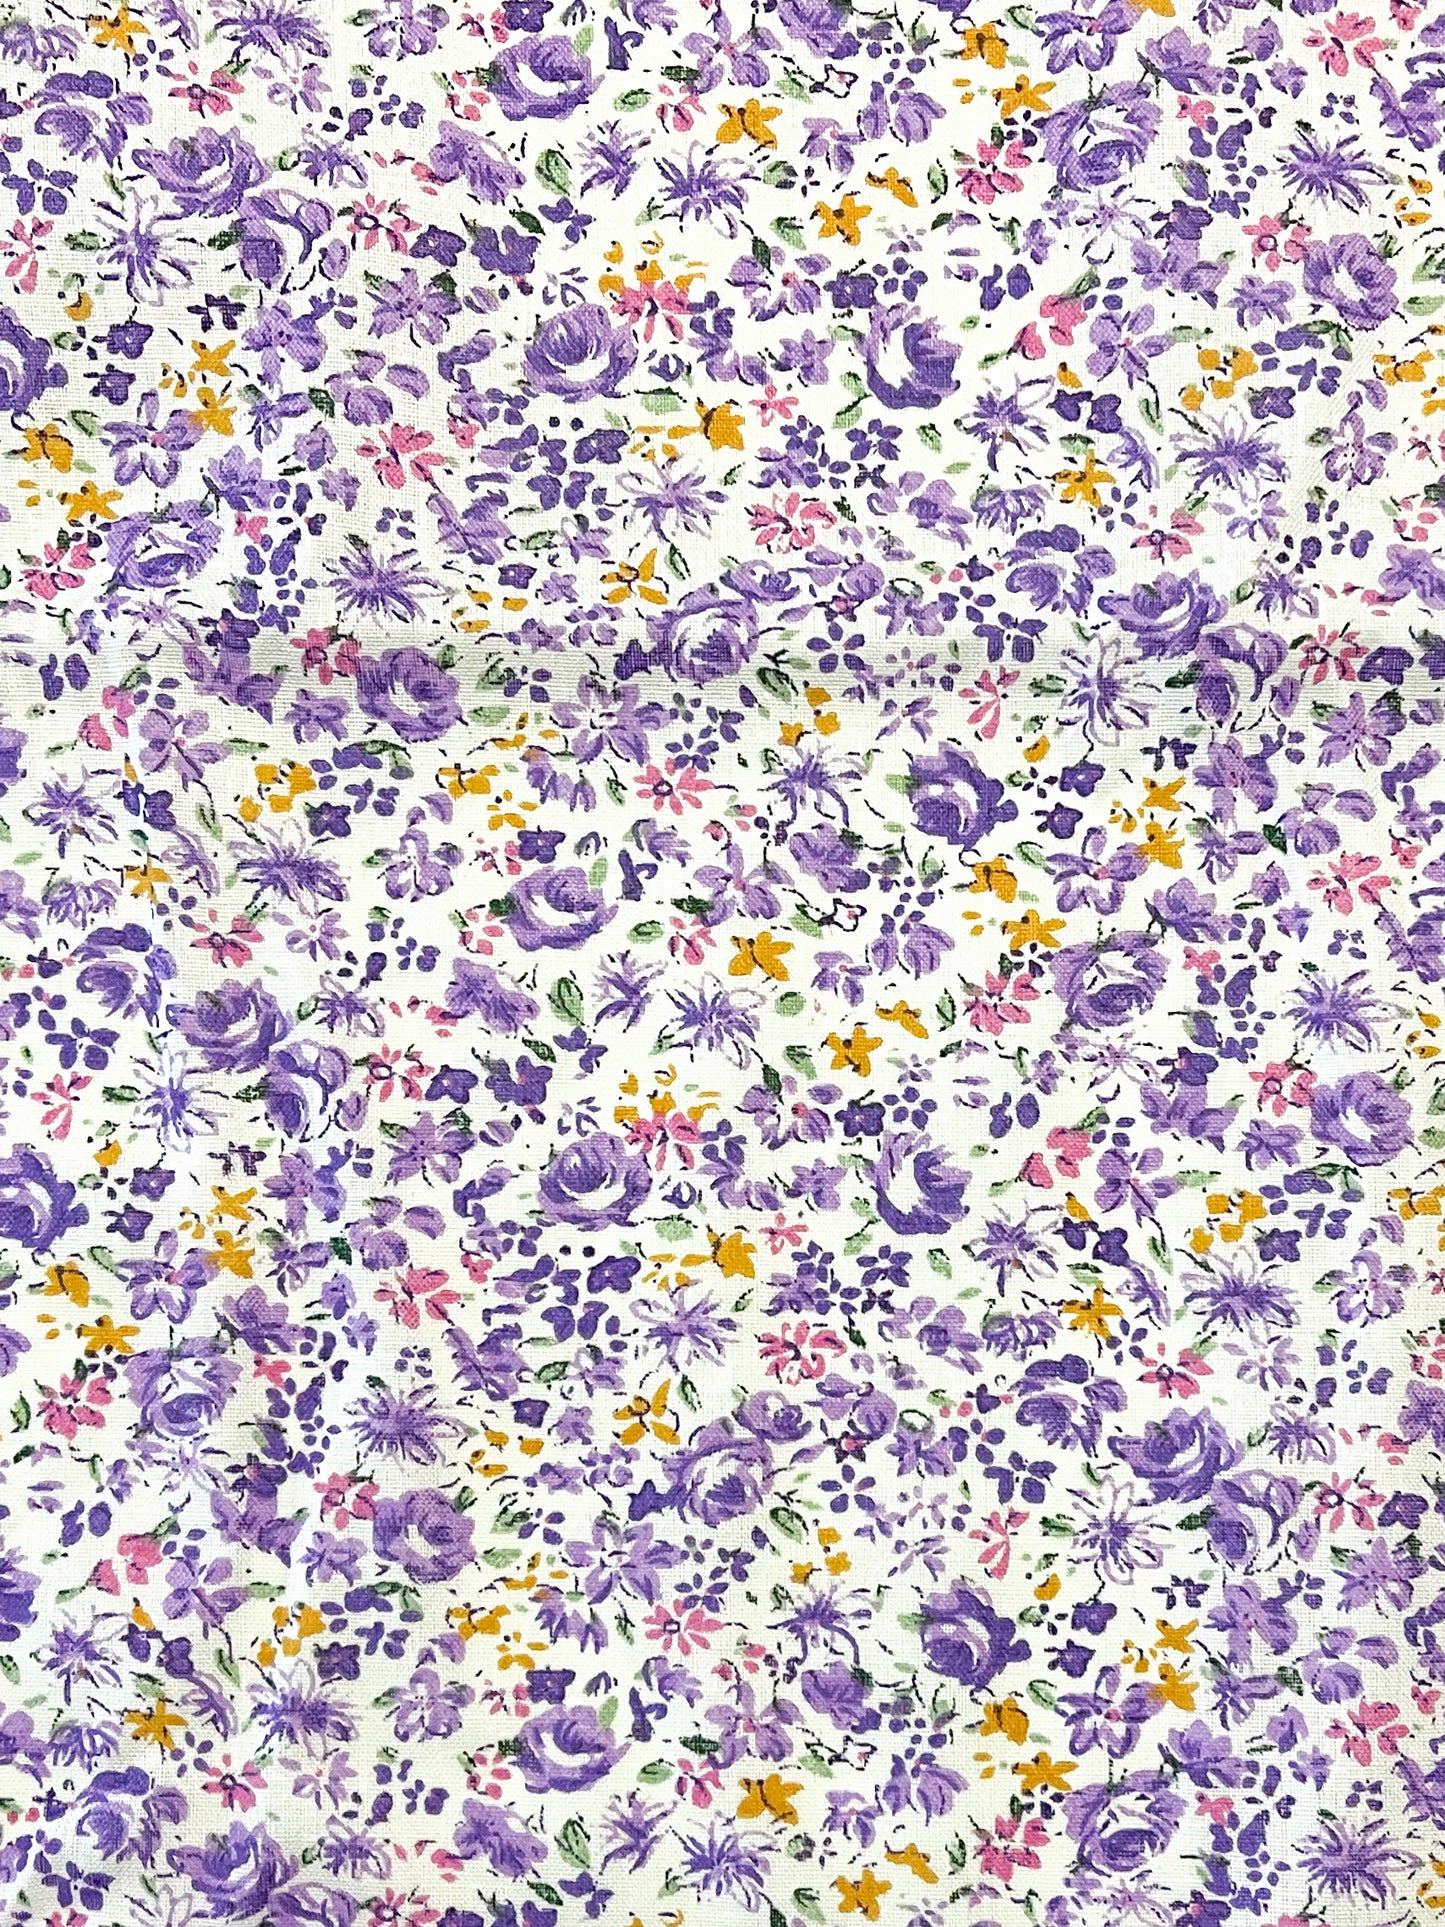 Violet blender precut bundle